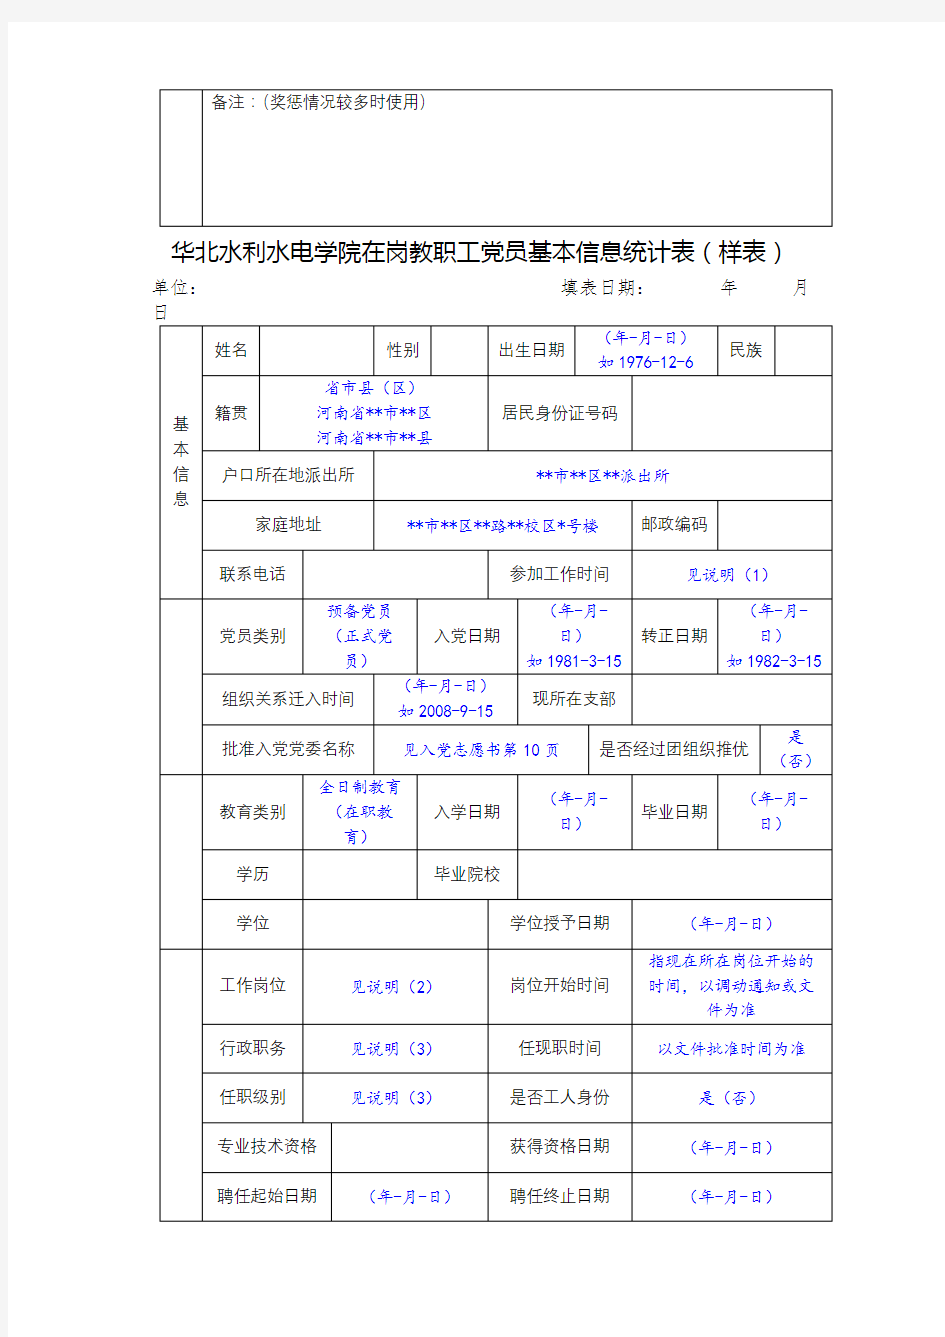 华北水利水电学院在岗教职工党员基本信息统计表【模板】